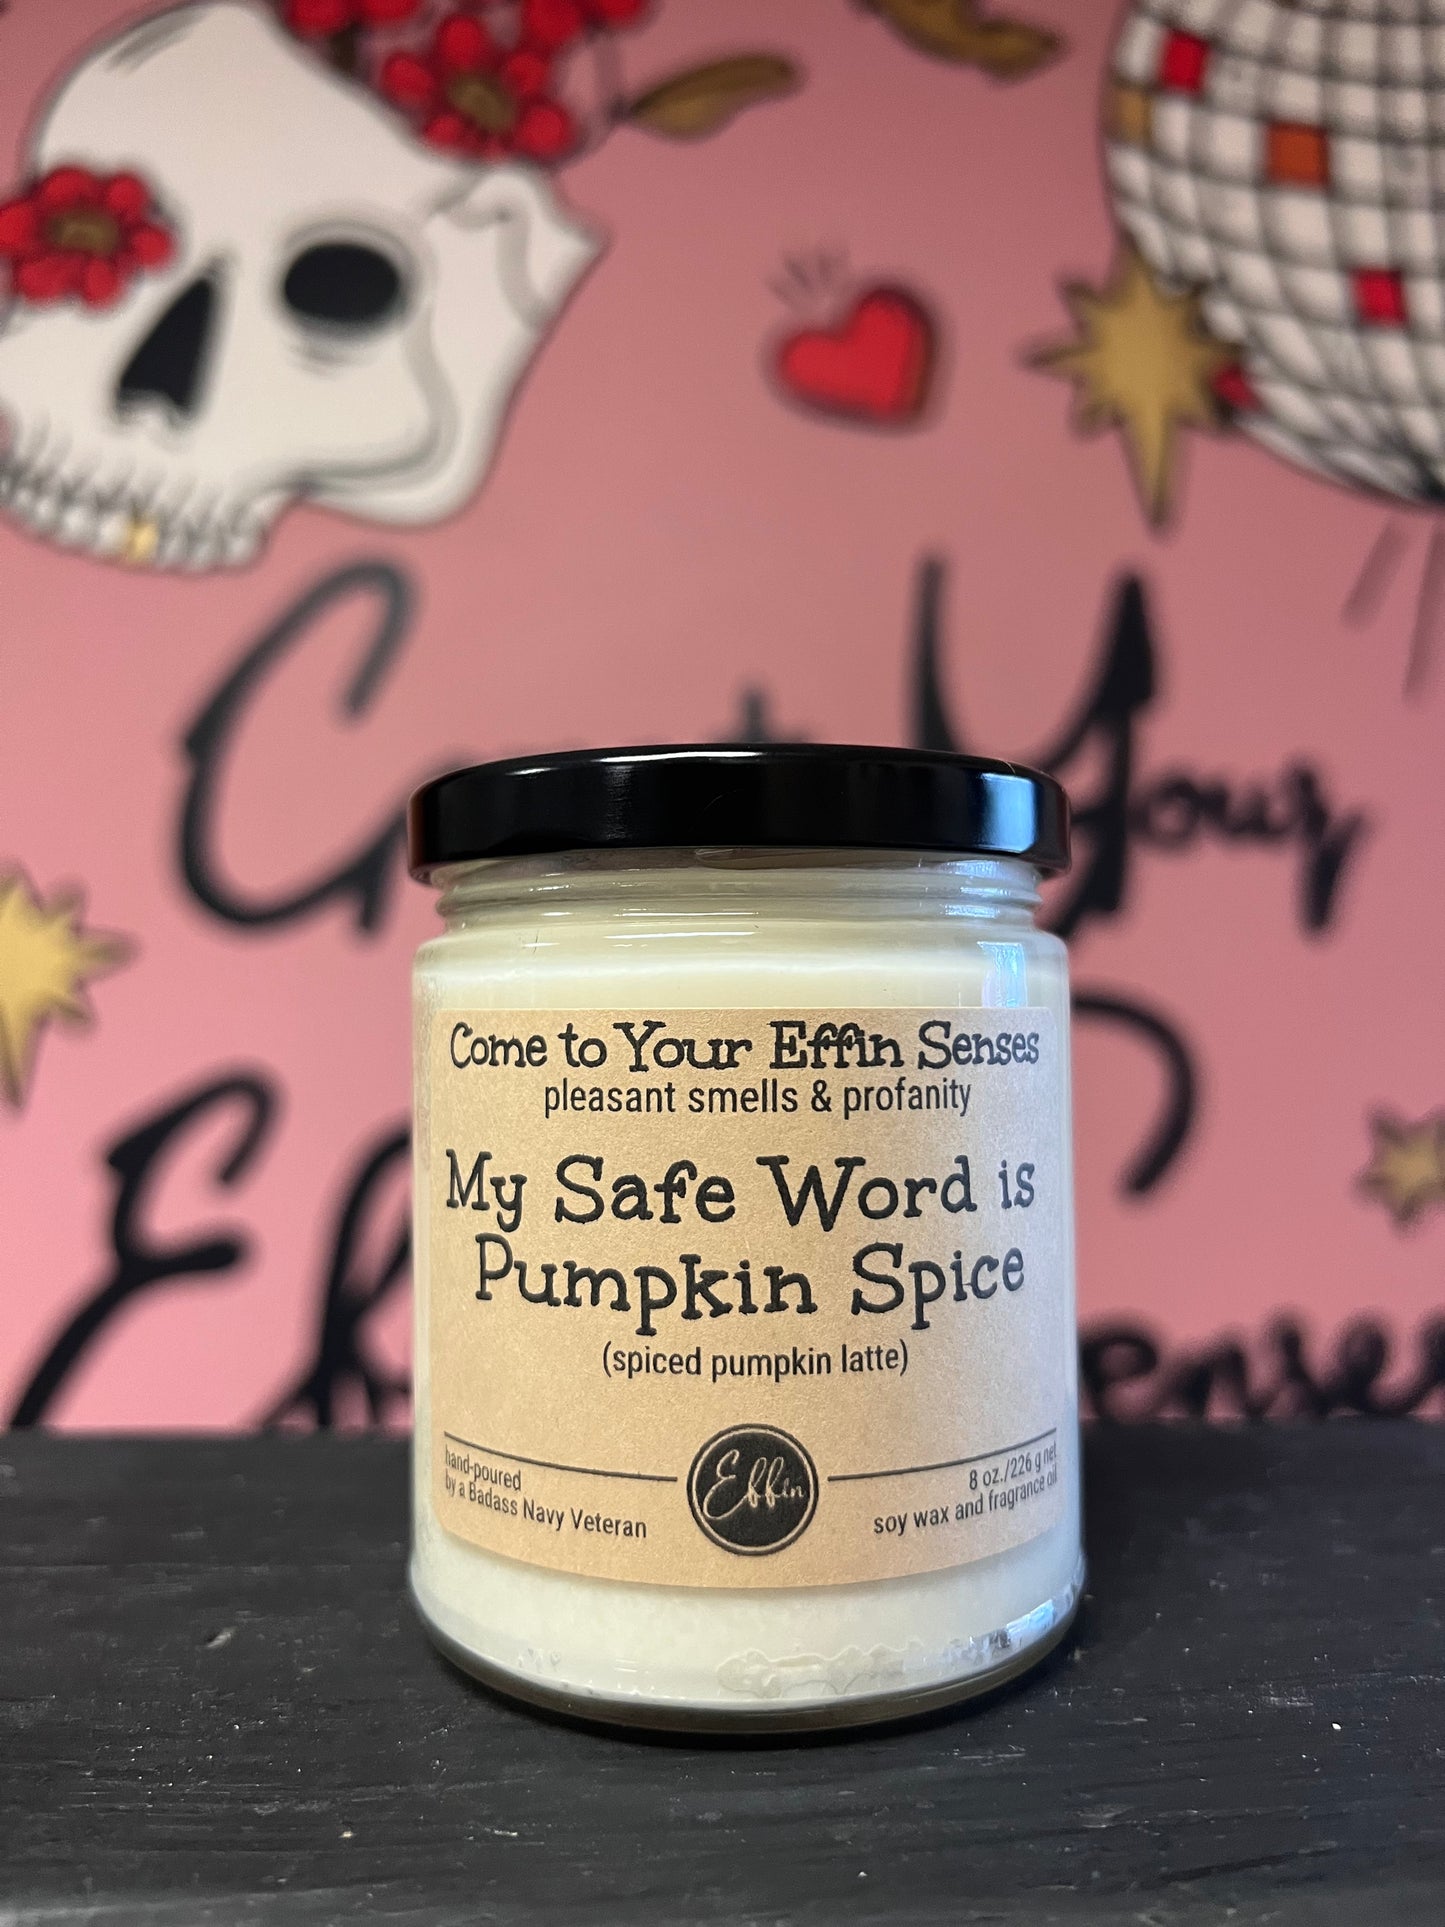 My Safe Word is Pumpkin Spice